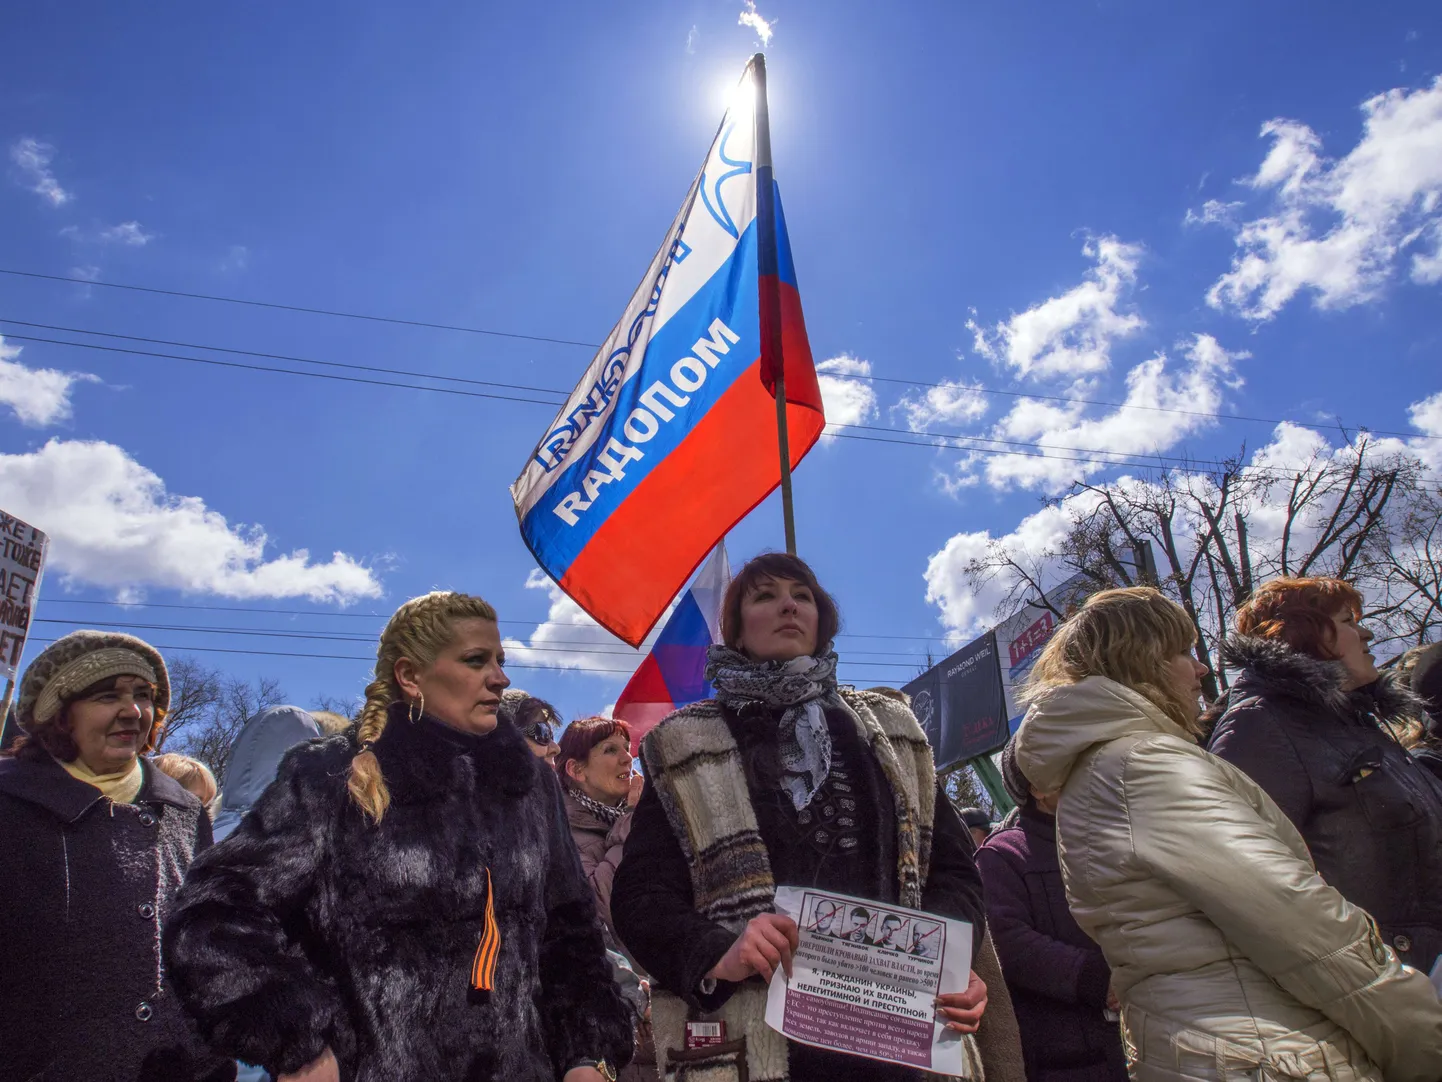 Eile ehk 5. aprillil lehvisid Ukraina julgeolekuteenistuse hoone juures Luganskis Vene lipud, kuid meeleolu oli rahulik.